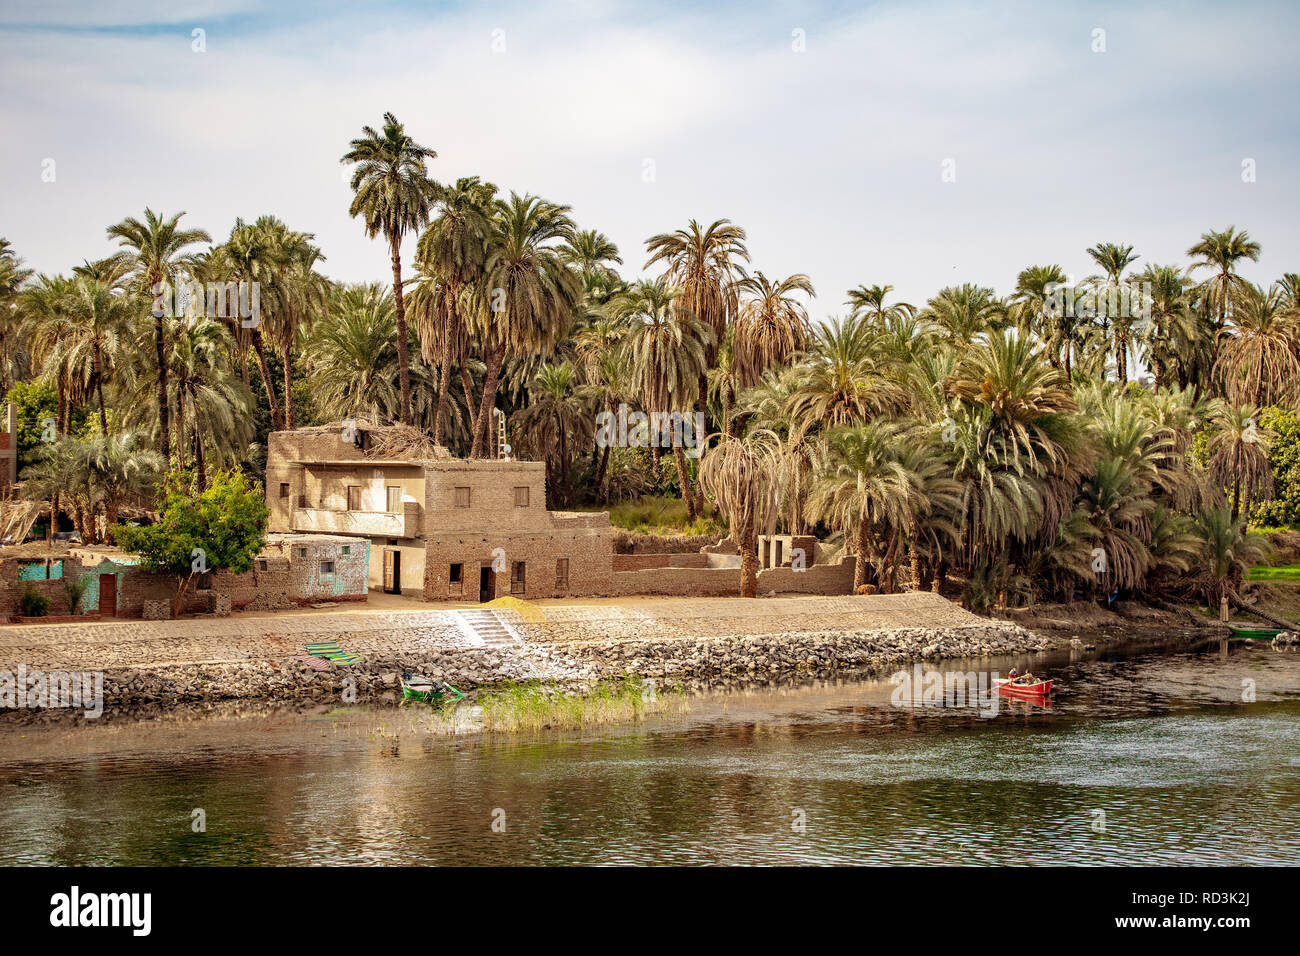 L'habitat traditionnel sur les rives du Nil à Louxor Egypte Banque D'Images